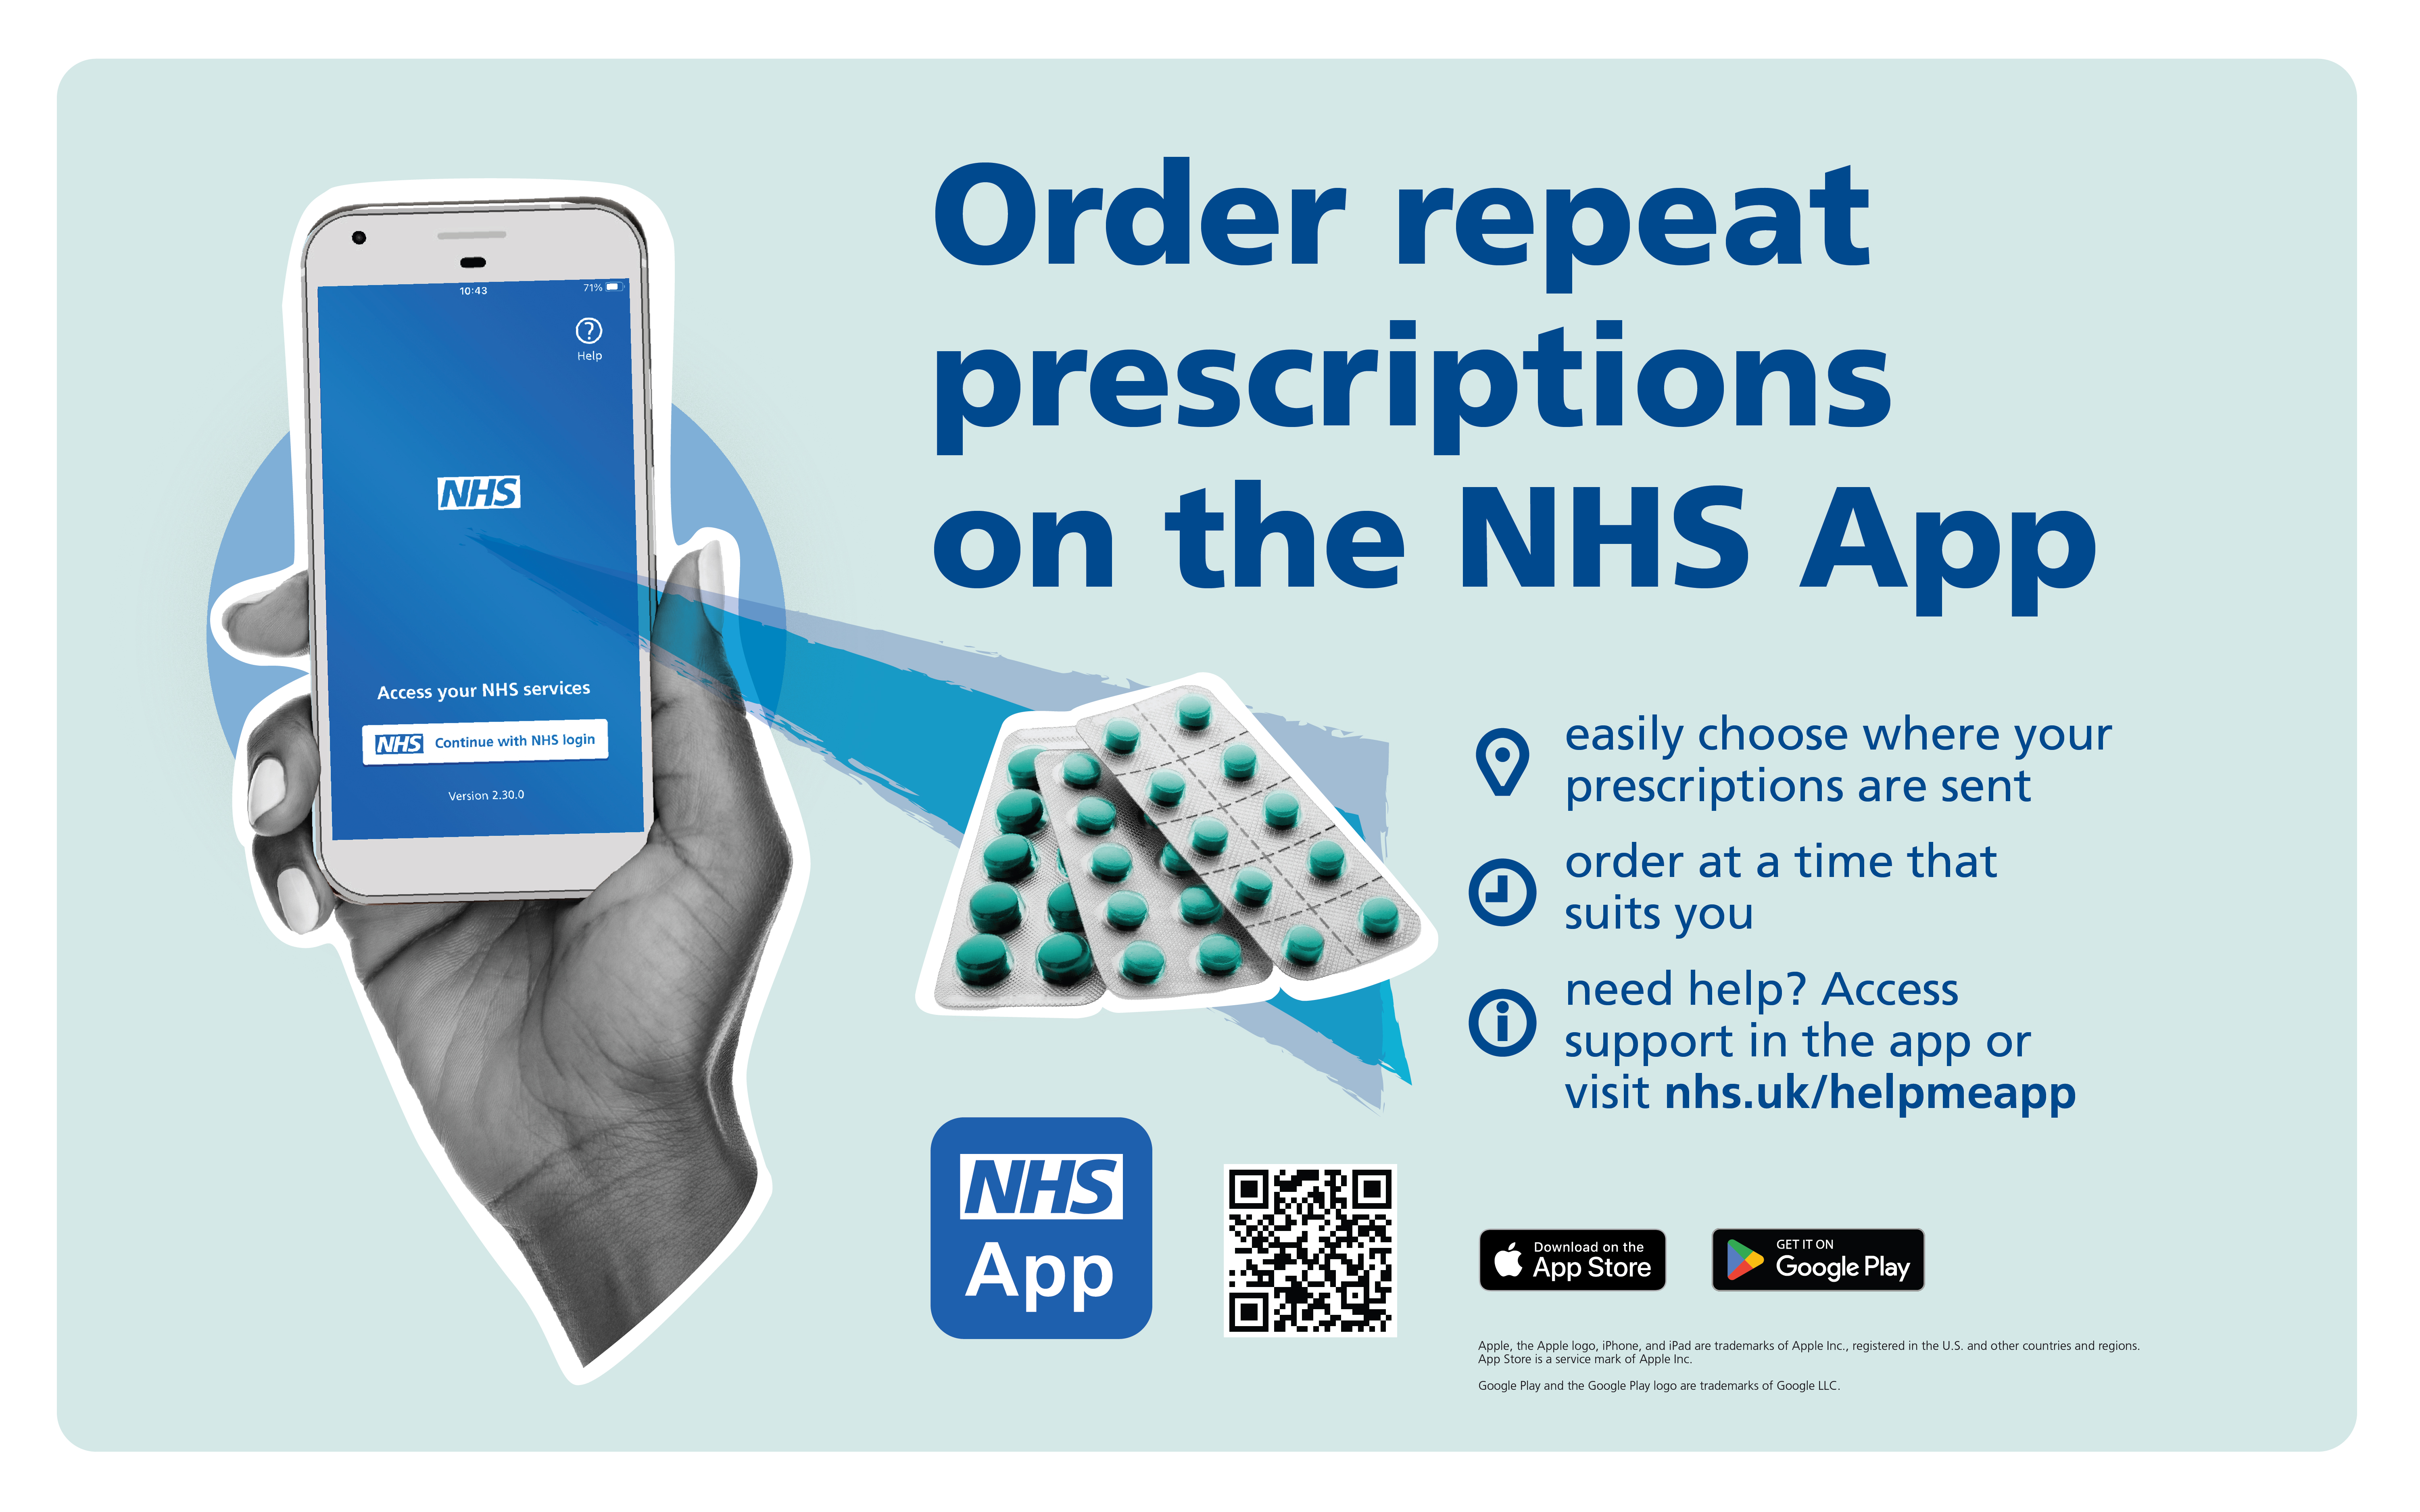 NHS App Repeat Prescriptions Poster